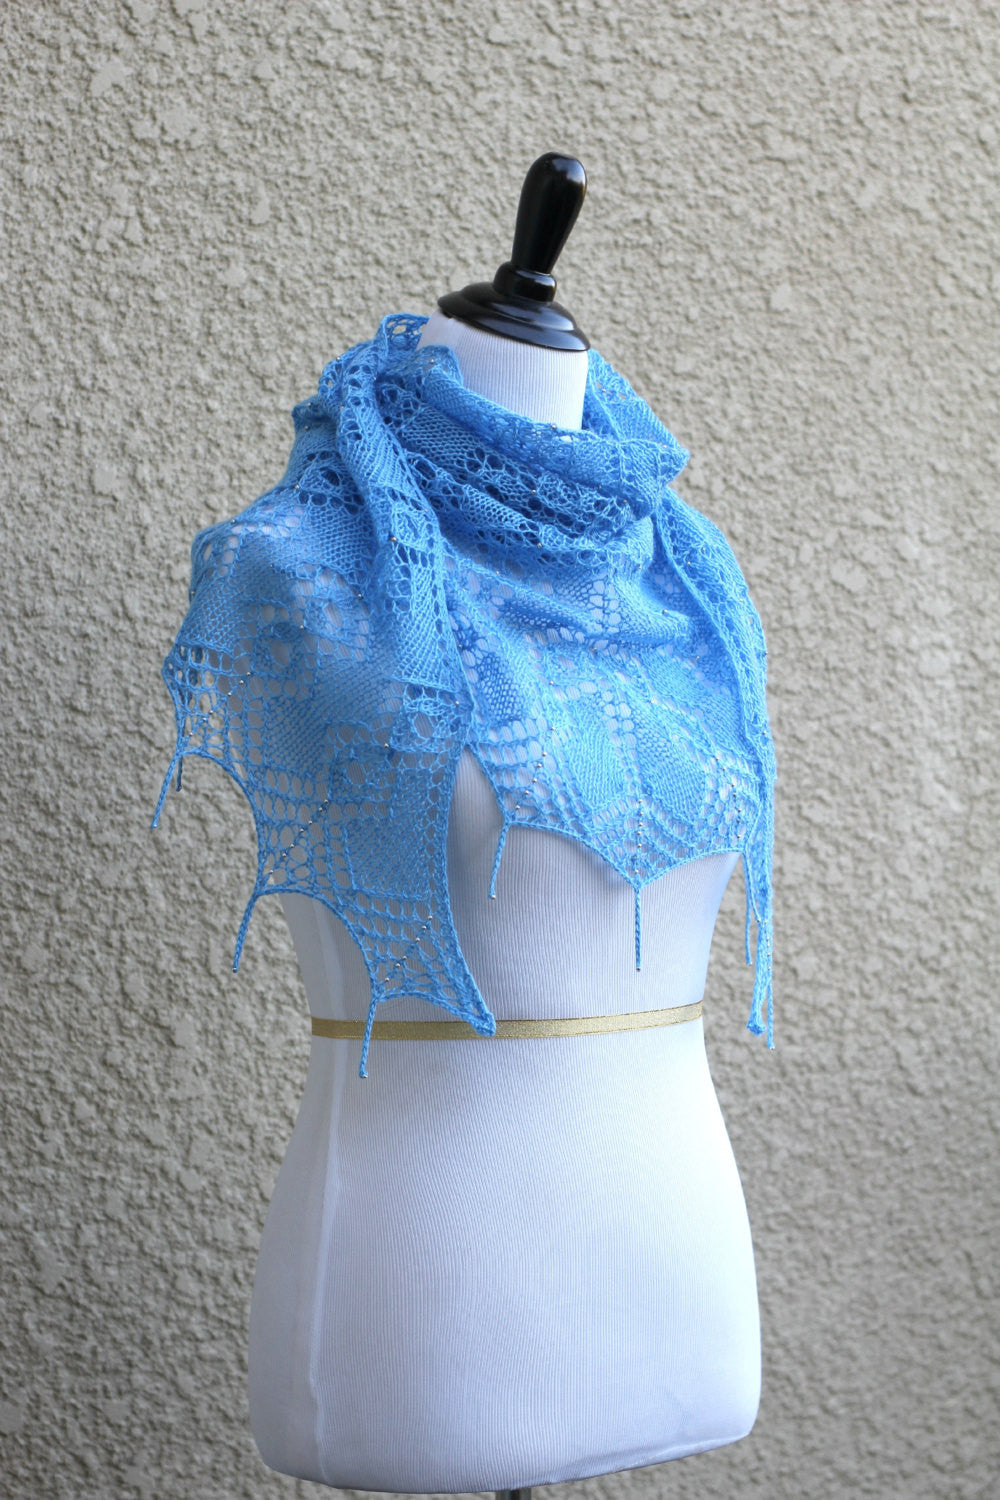 Knit blue shawl